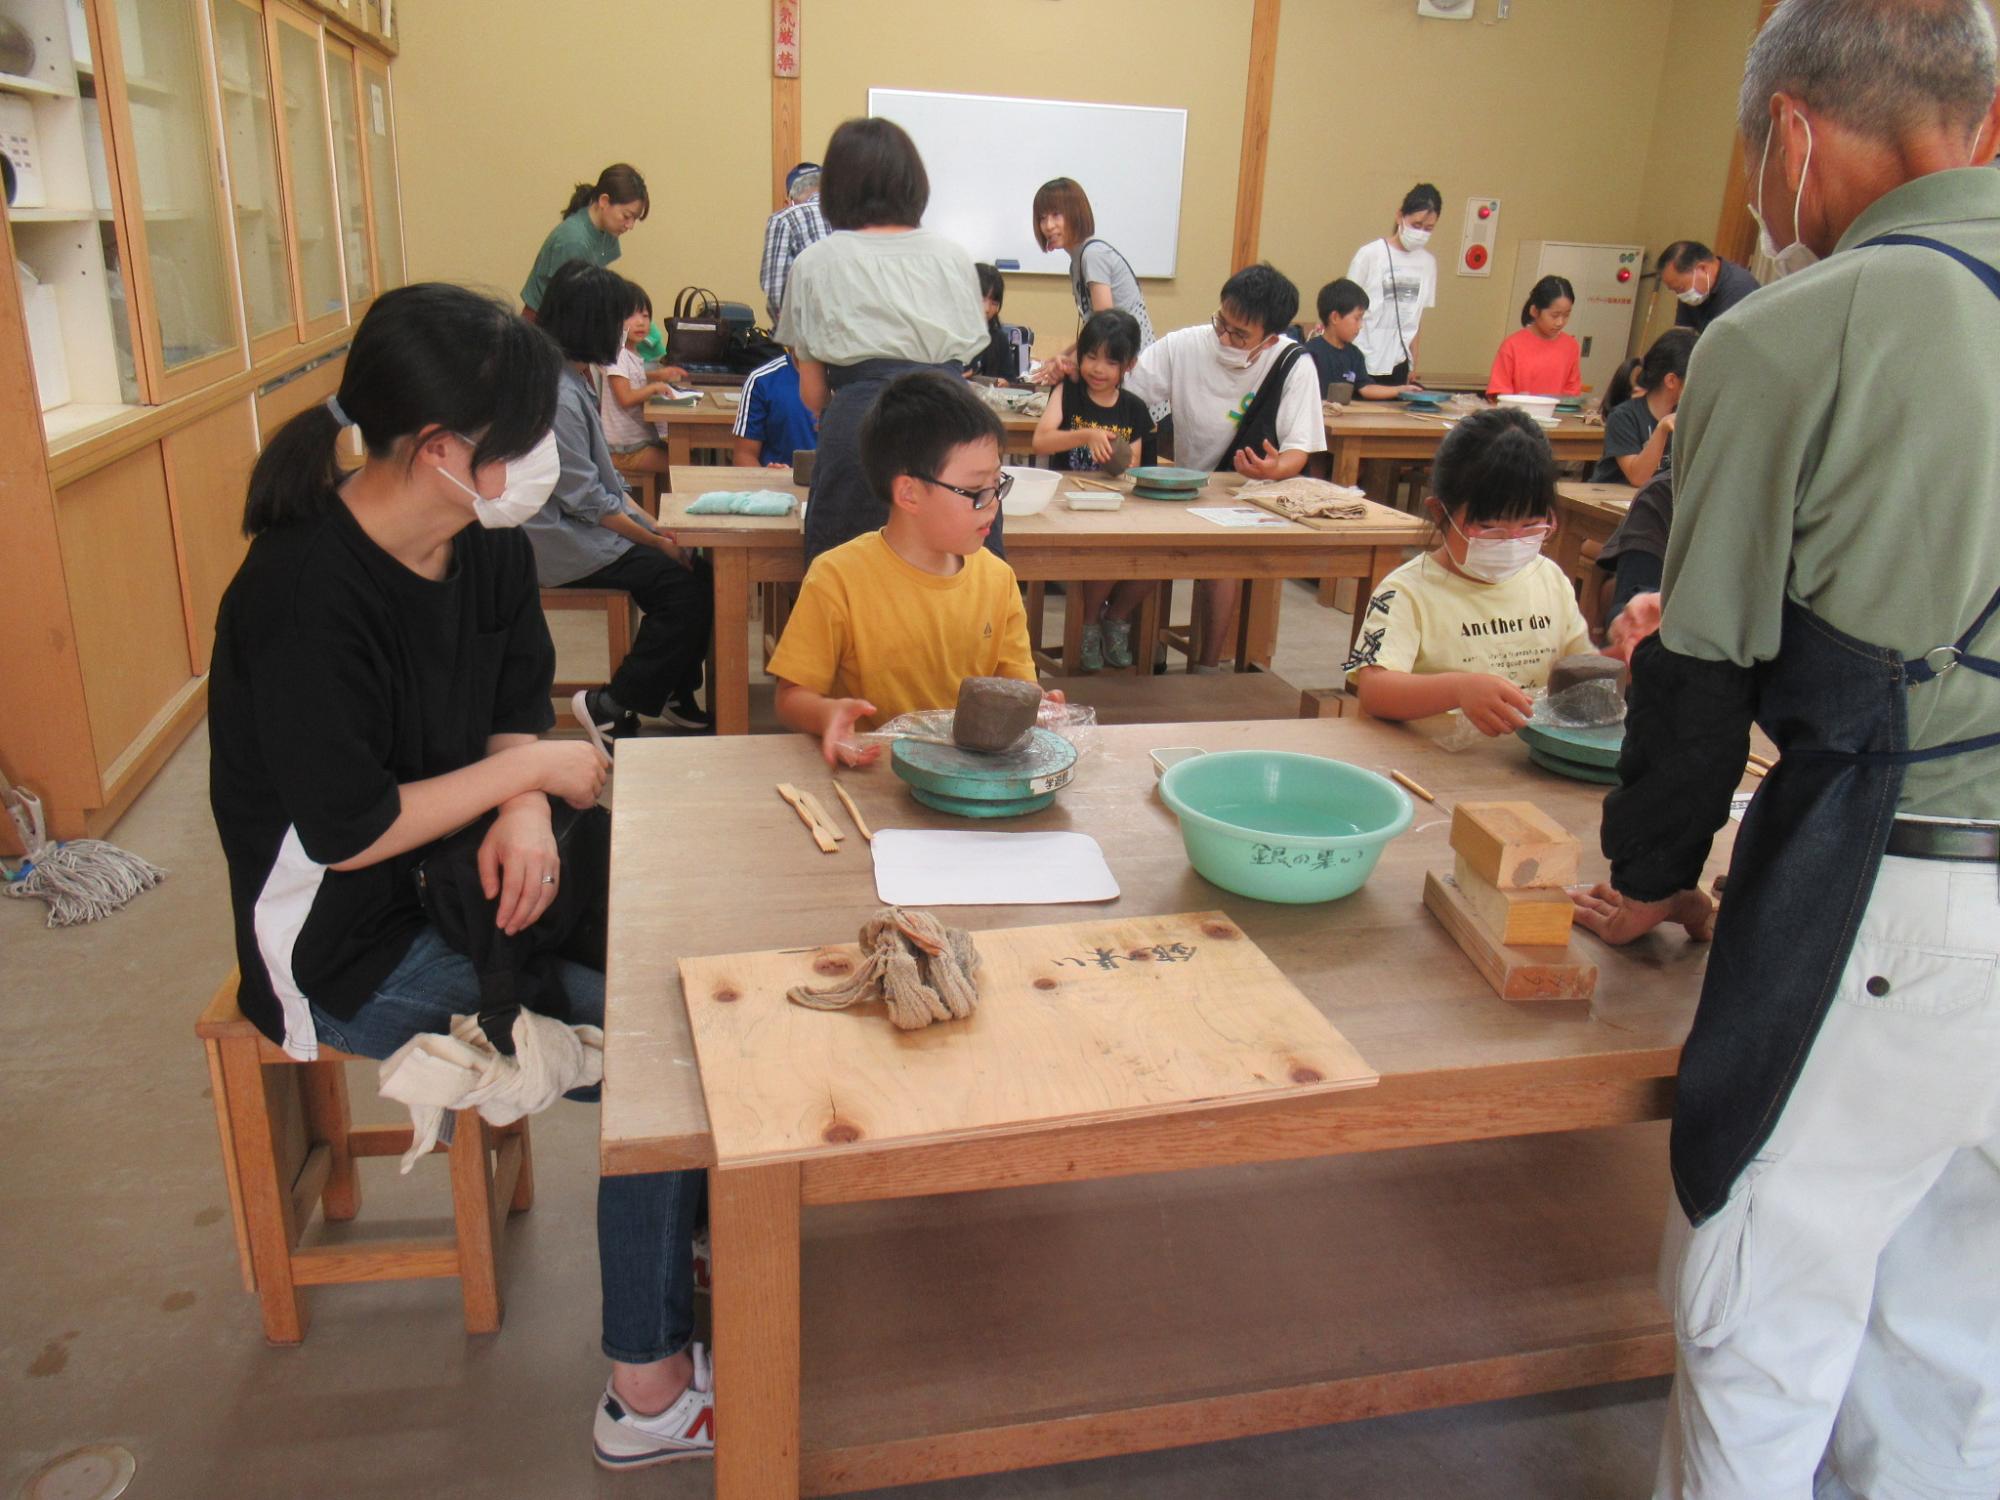 指導員に教わりながら粘土の形を整えていく参加者たち